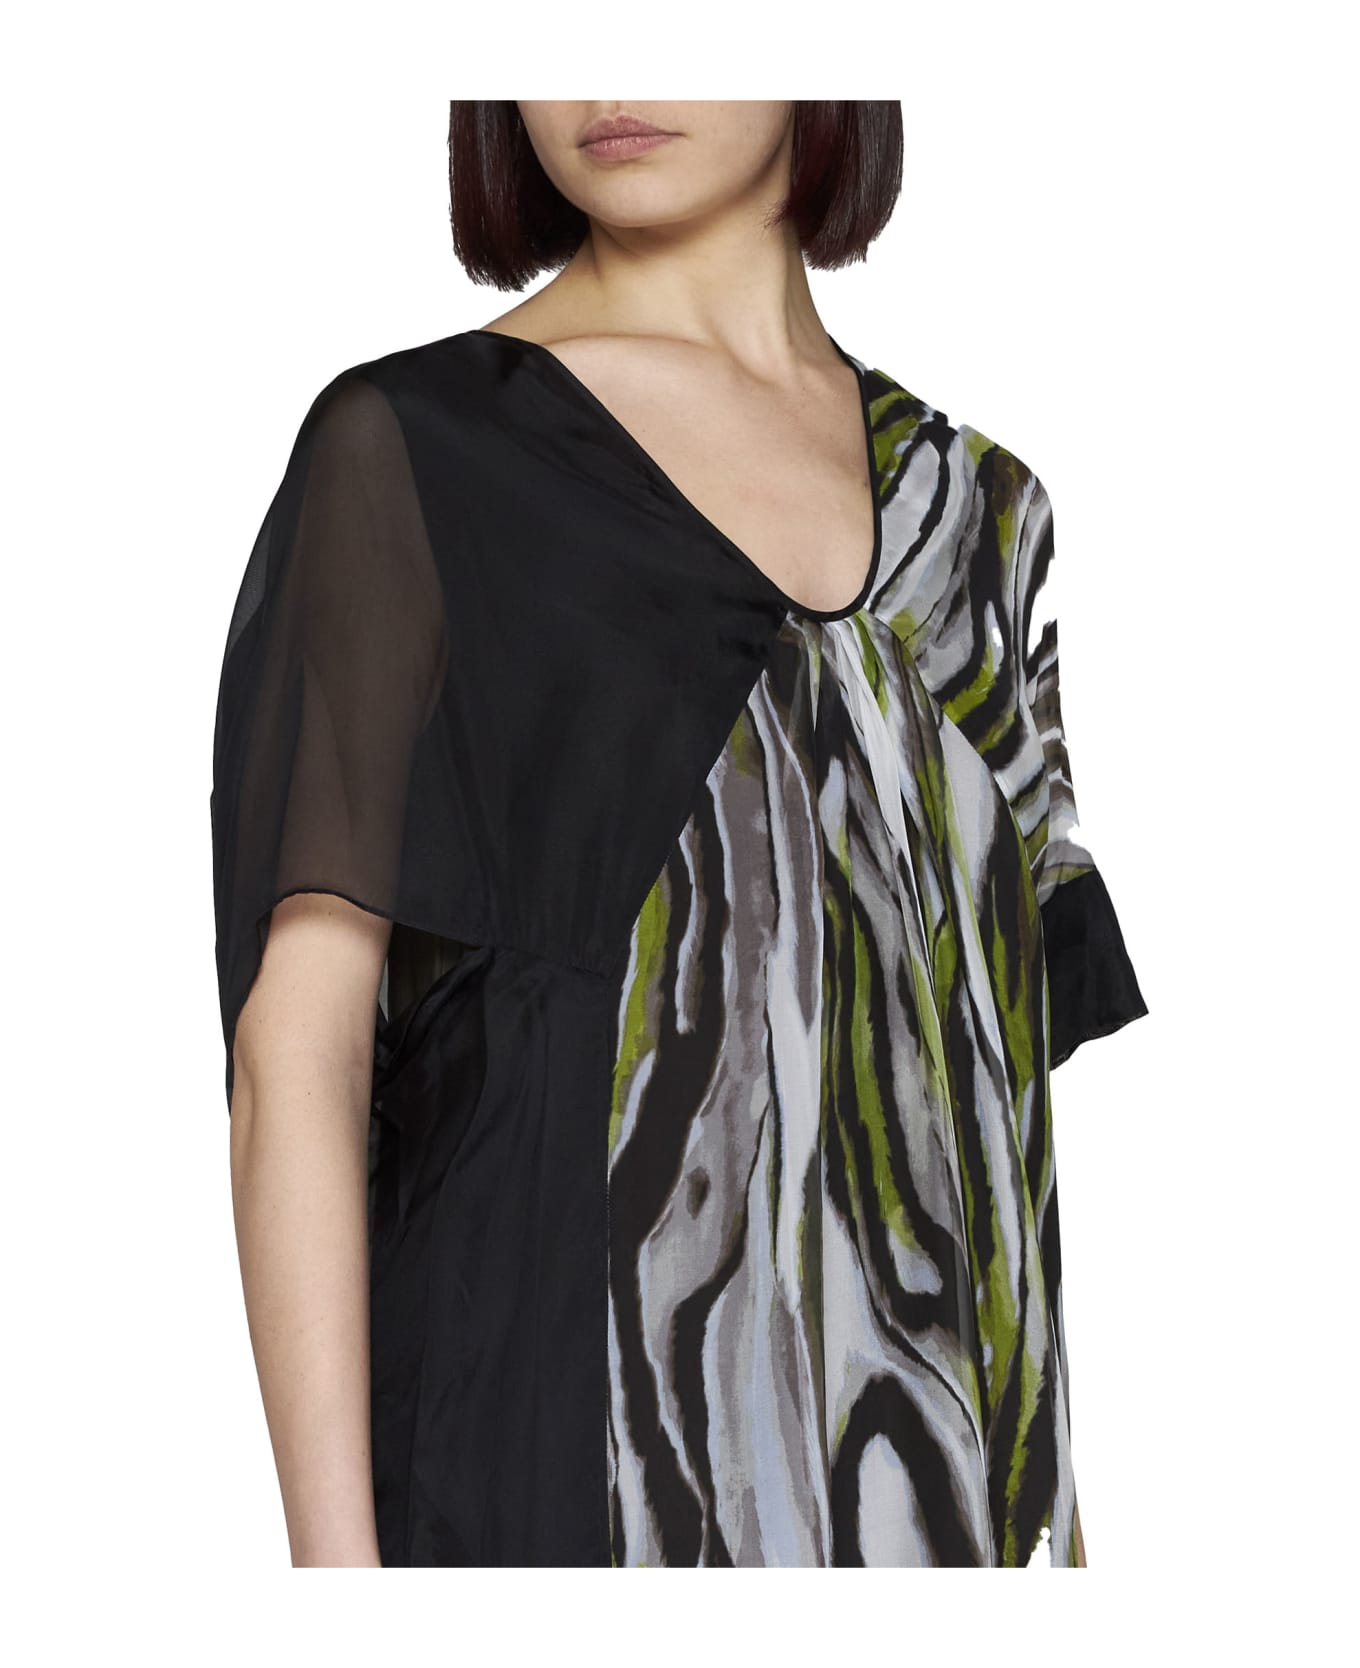 Diane Von Furstenberg Dress - Zebra mist/black ワンピース＆ドレス